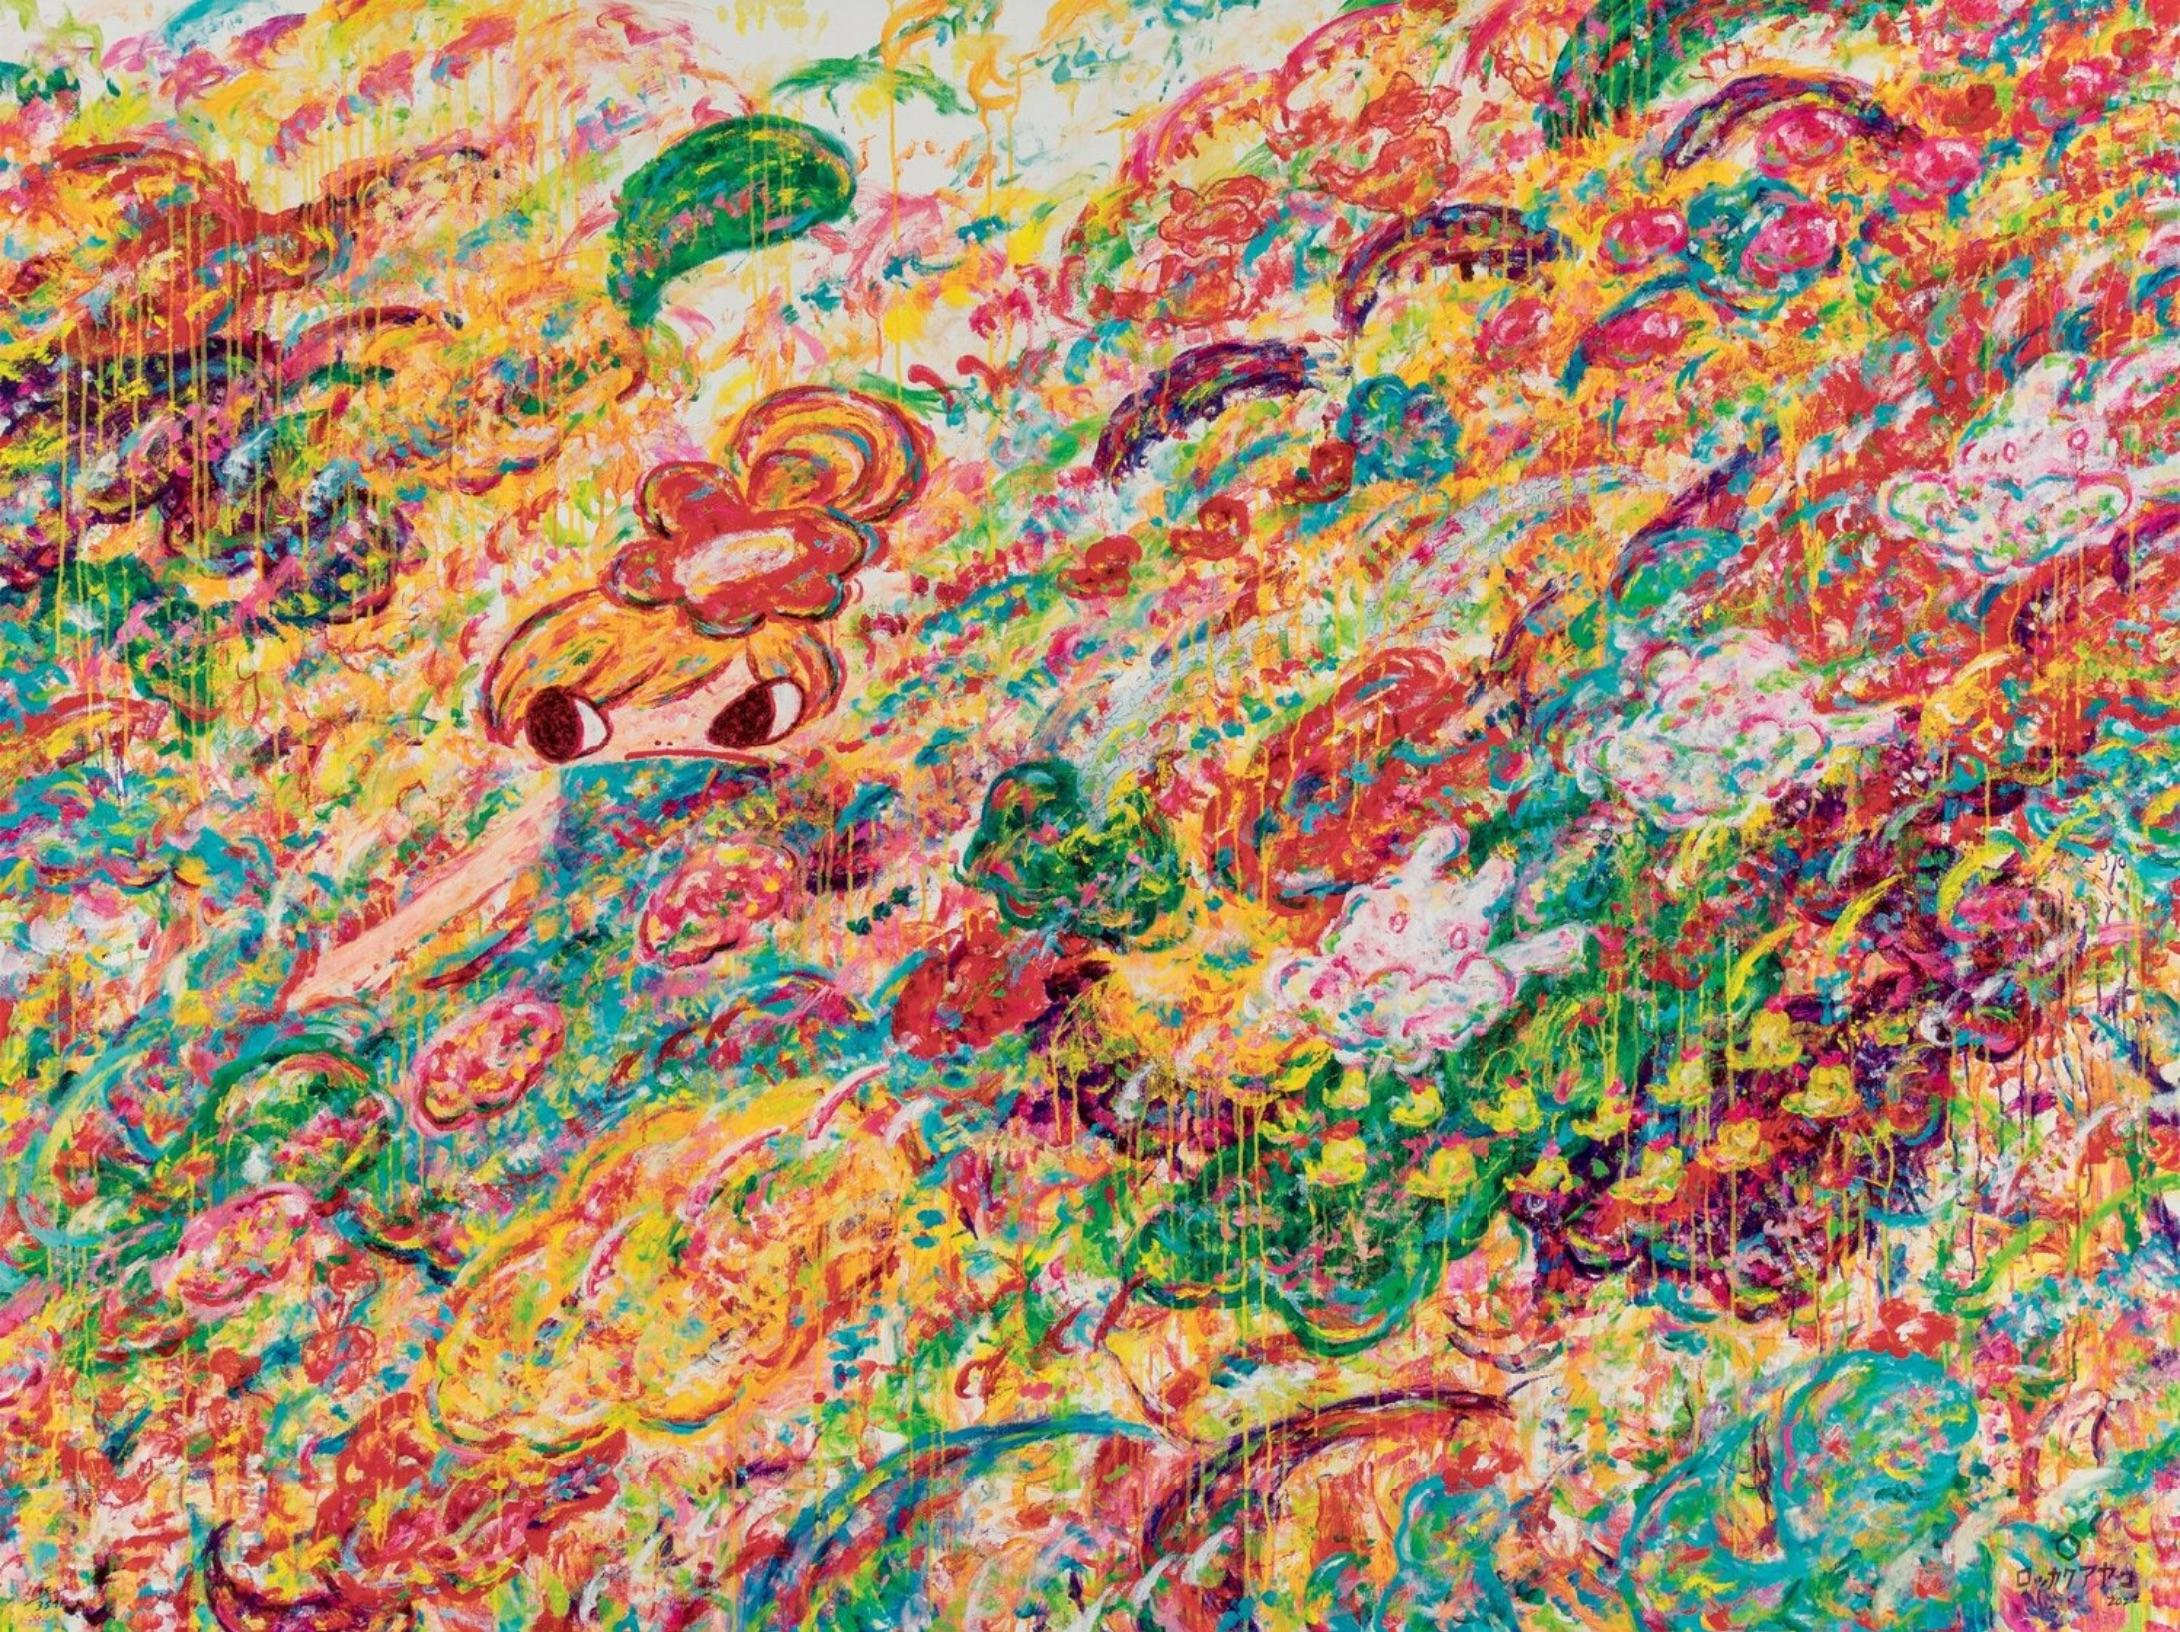 Ayako Rokkaku
Sans titre, 2022
Impression pigmentaire à fond perdu, séchée aux UV, avec une couche de vernis sérigraphique sur papier Somerset Tub Sized Satin Radiant White de 410 g/m².
23 3/5 × 31 1/2 in  60 × 80 cm
Edition de 3591